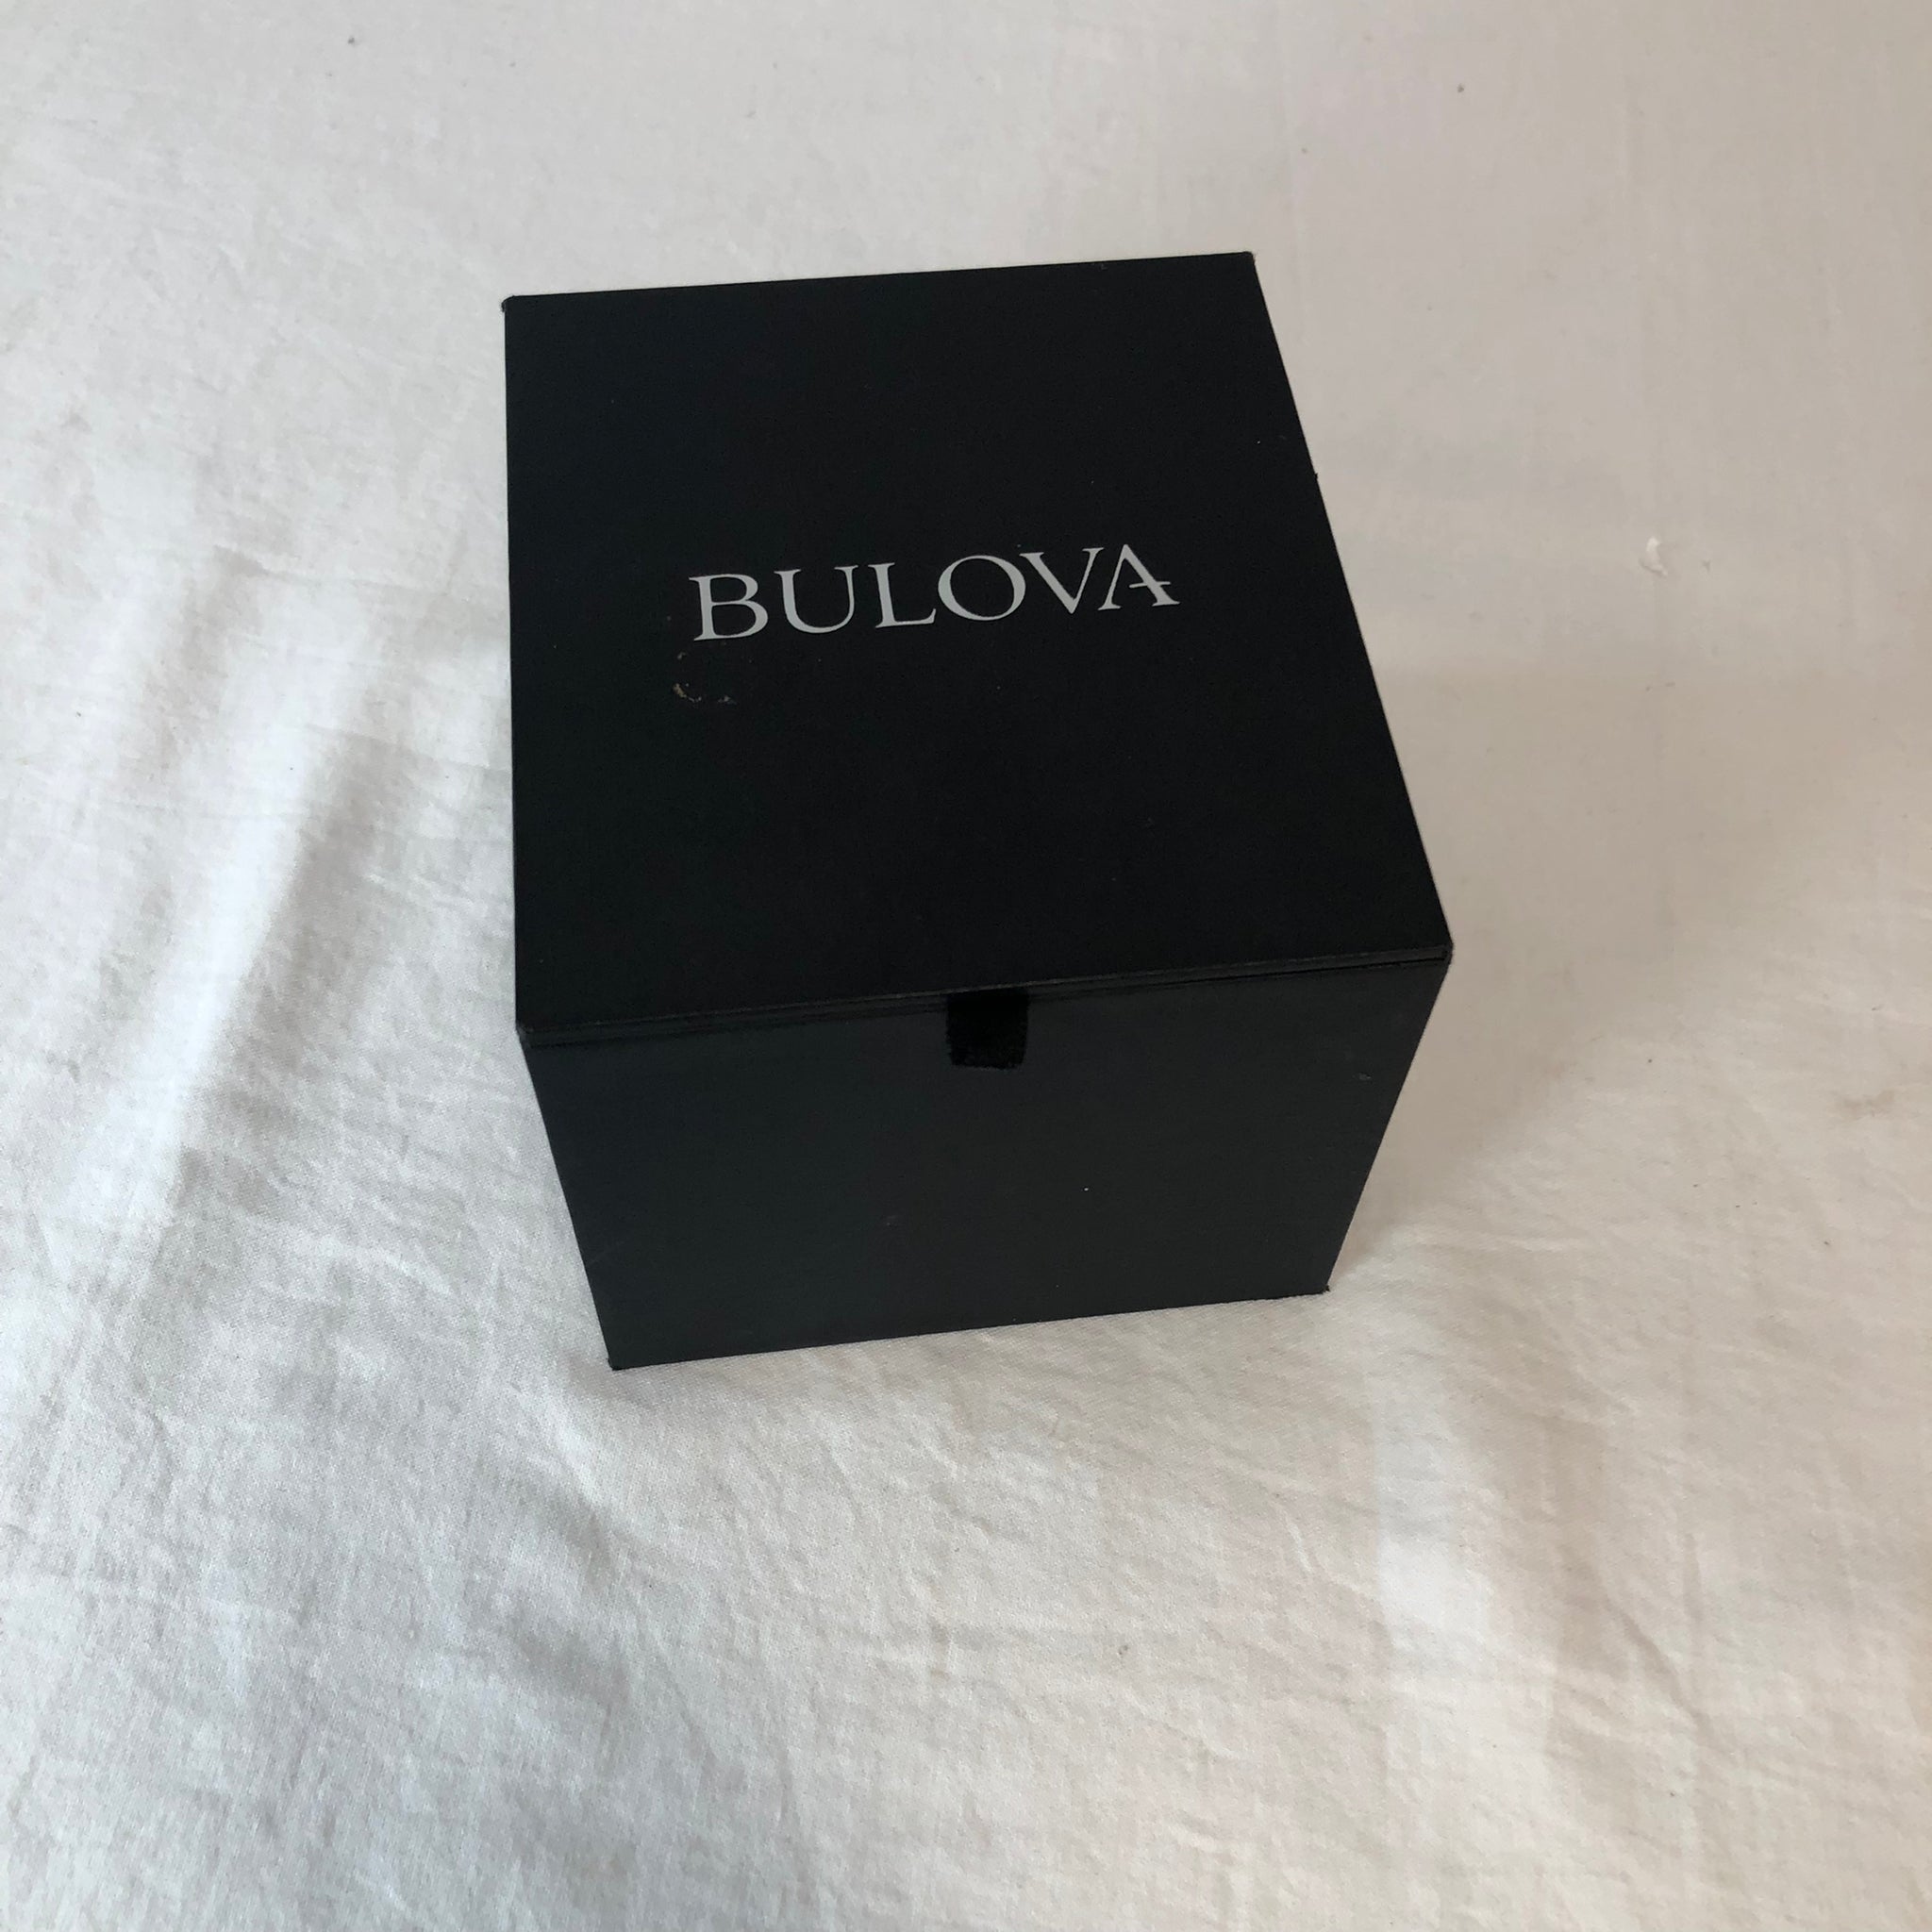 Bulova Women's 36mm Mother-of-Pearl Diamond Watch Stainless Steel Bracelet